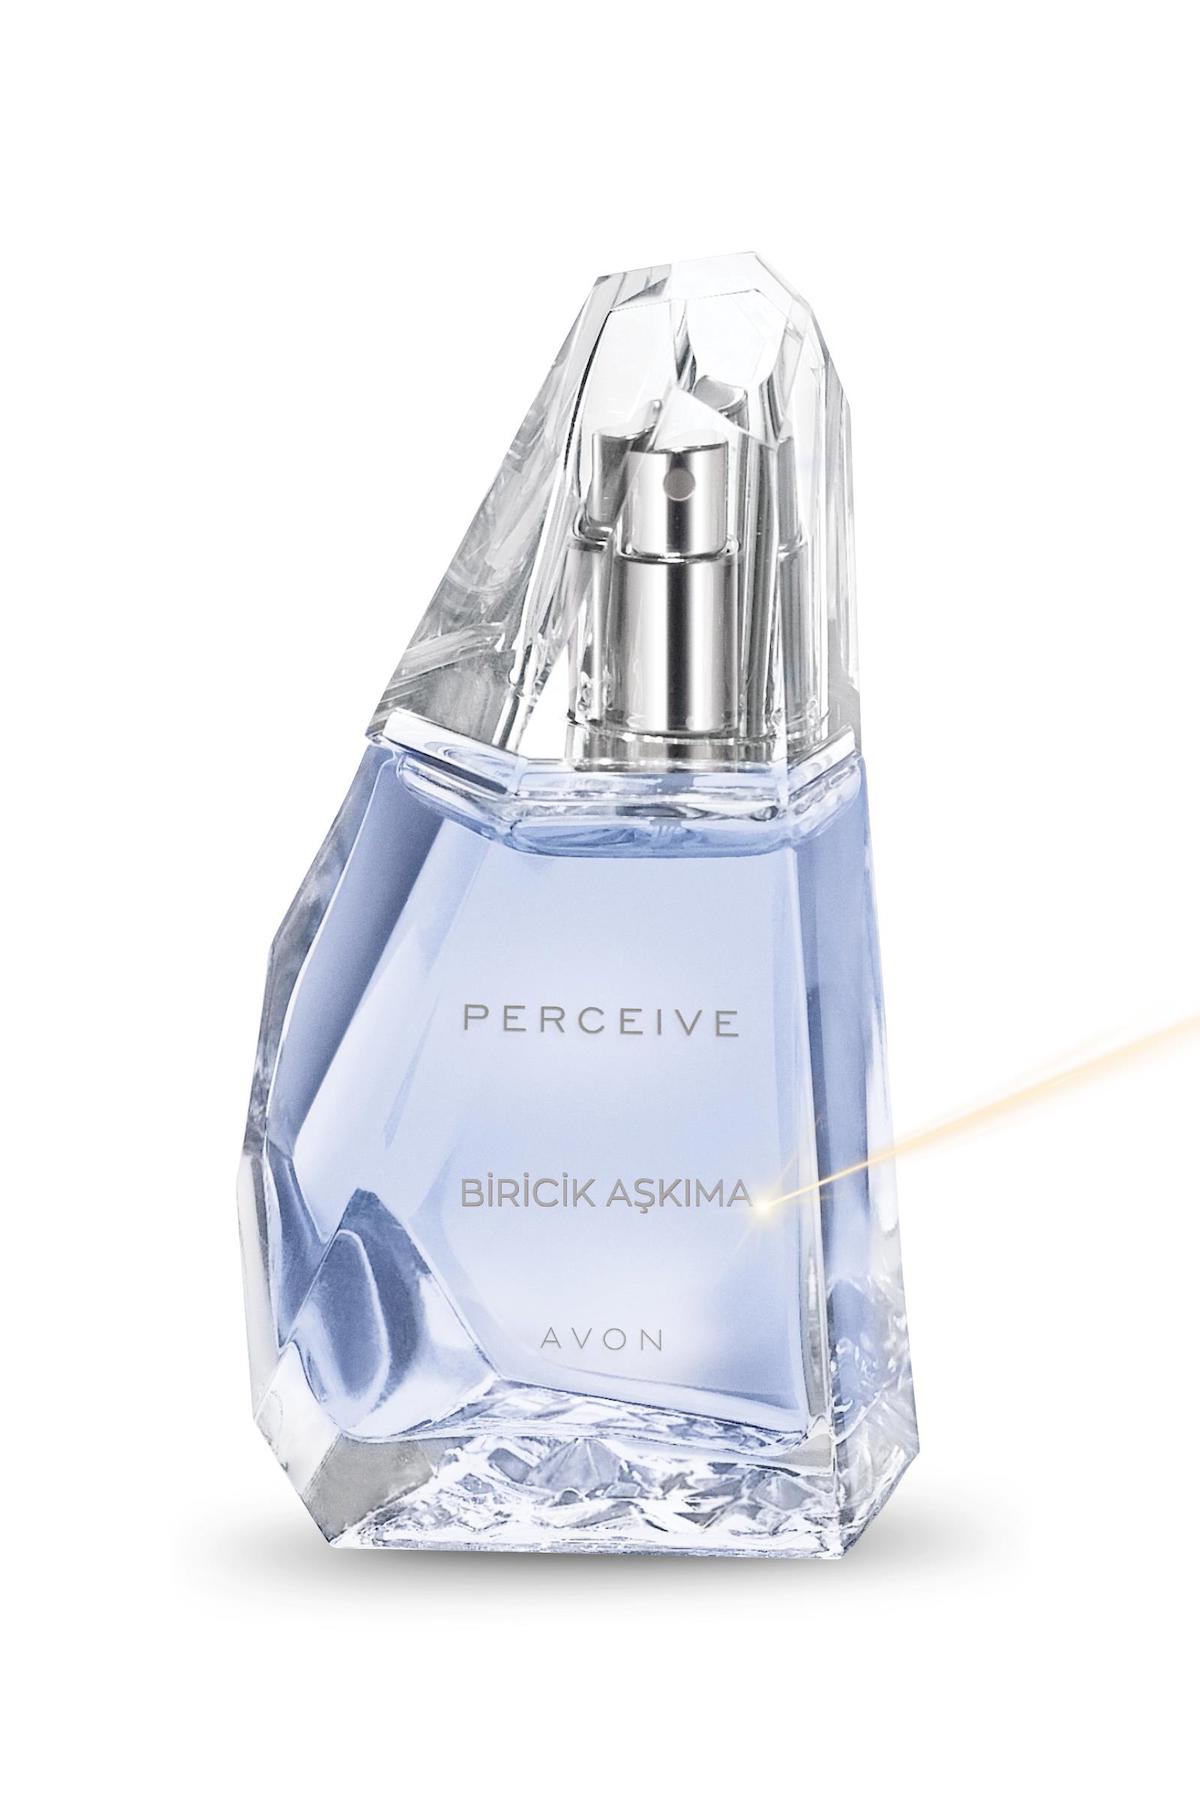 Avon Perceive Biricik Aşkıma EDP Çiçeksi-Oryantal Kadın Parfüm 50 ml